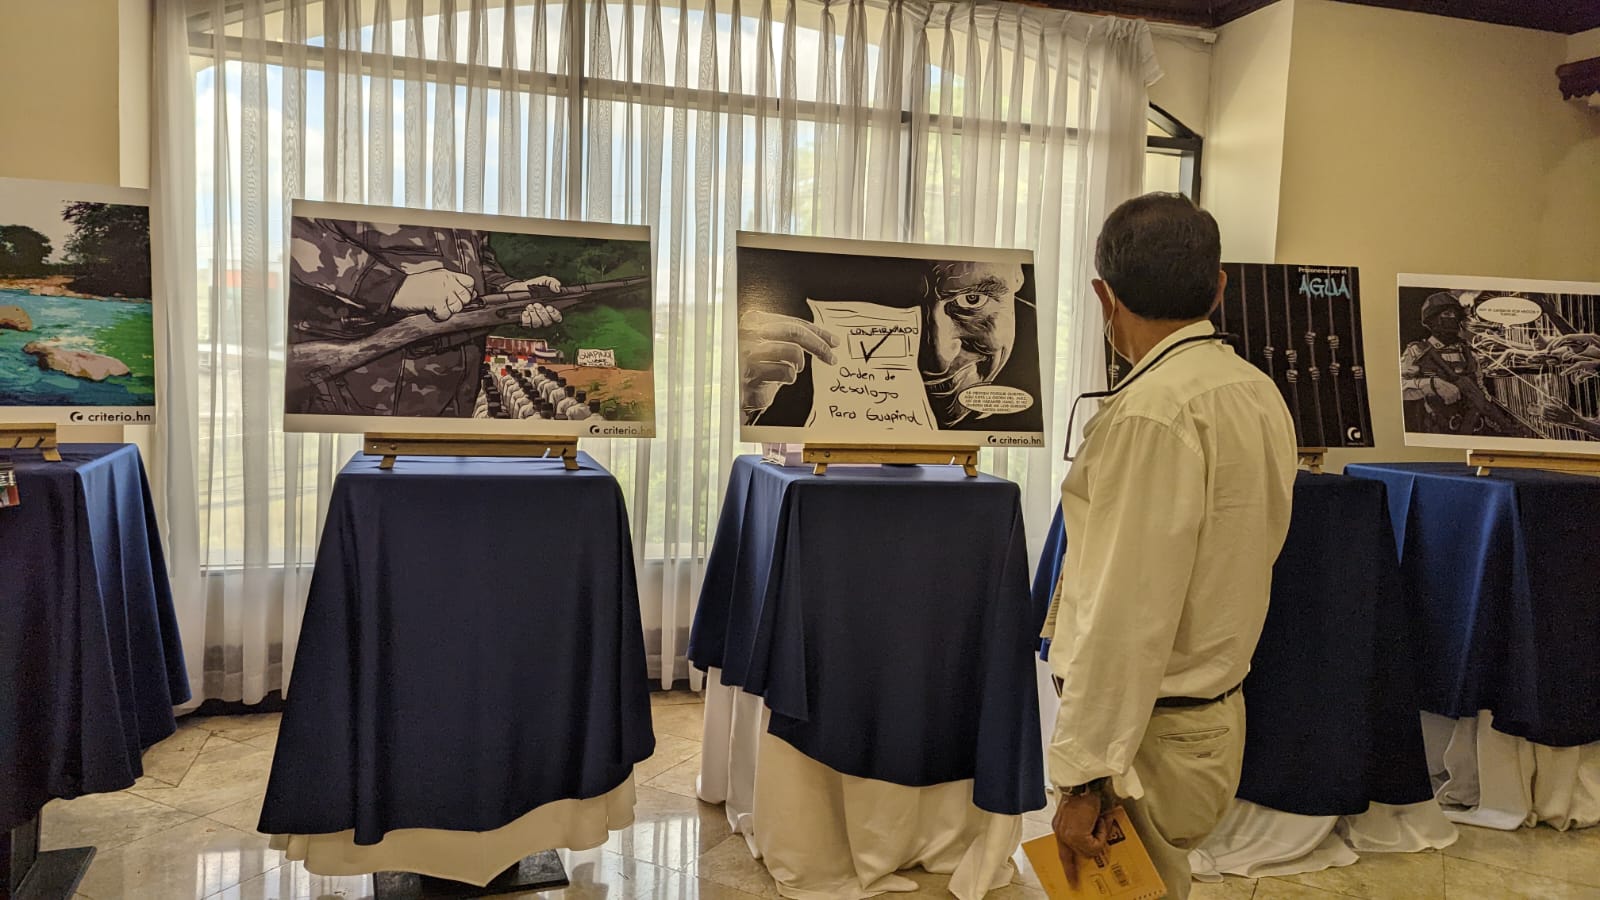 Los artes del cómic, que resumen la historia de los defensores del río Guapinol, fueron admirados por los asistentes al evento. (Foto: Criterio.hn/Marcia Perdomo)